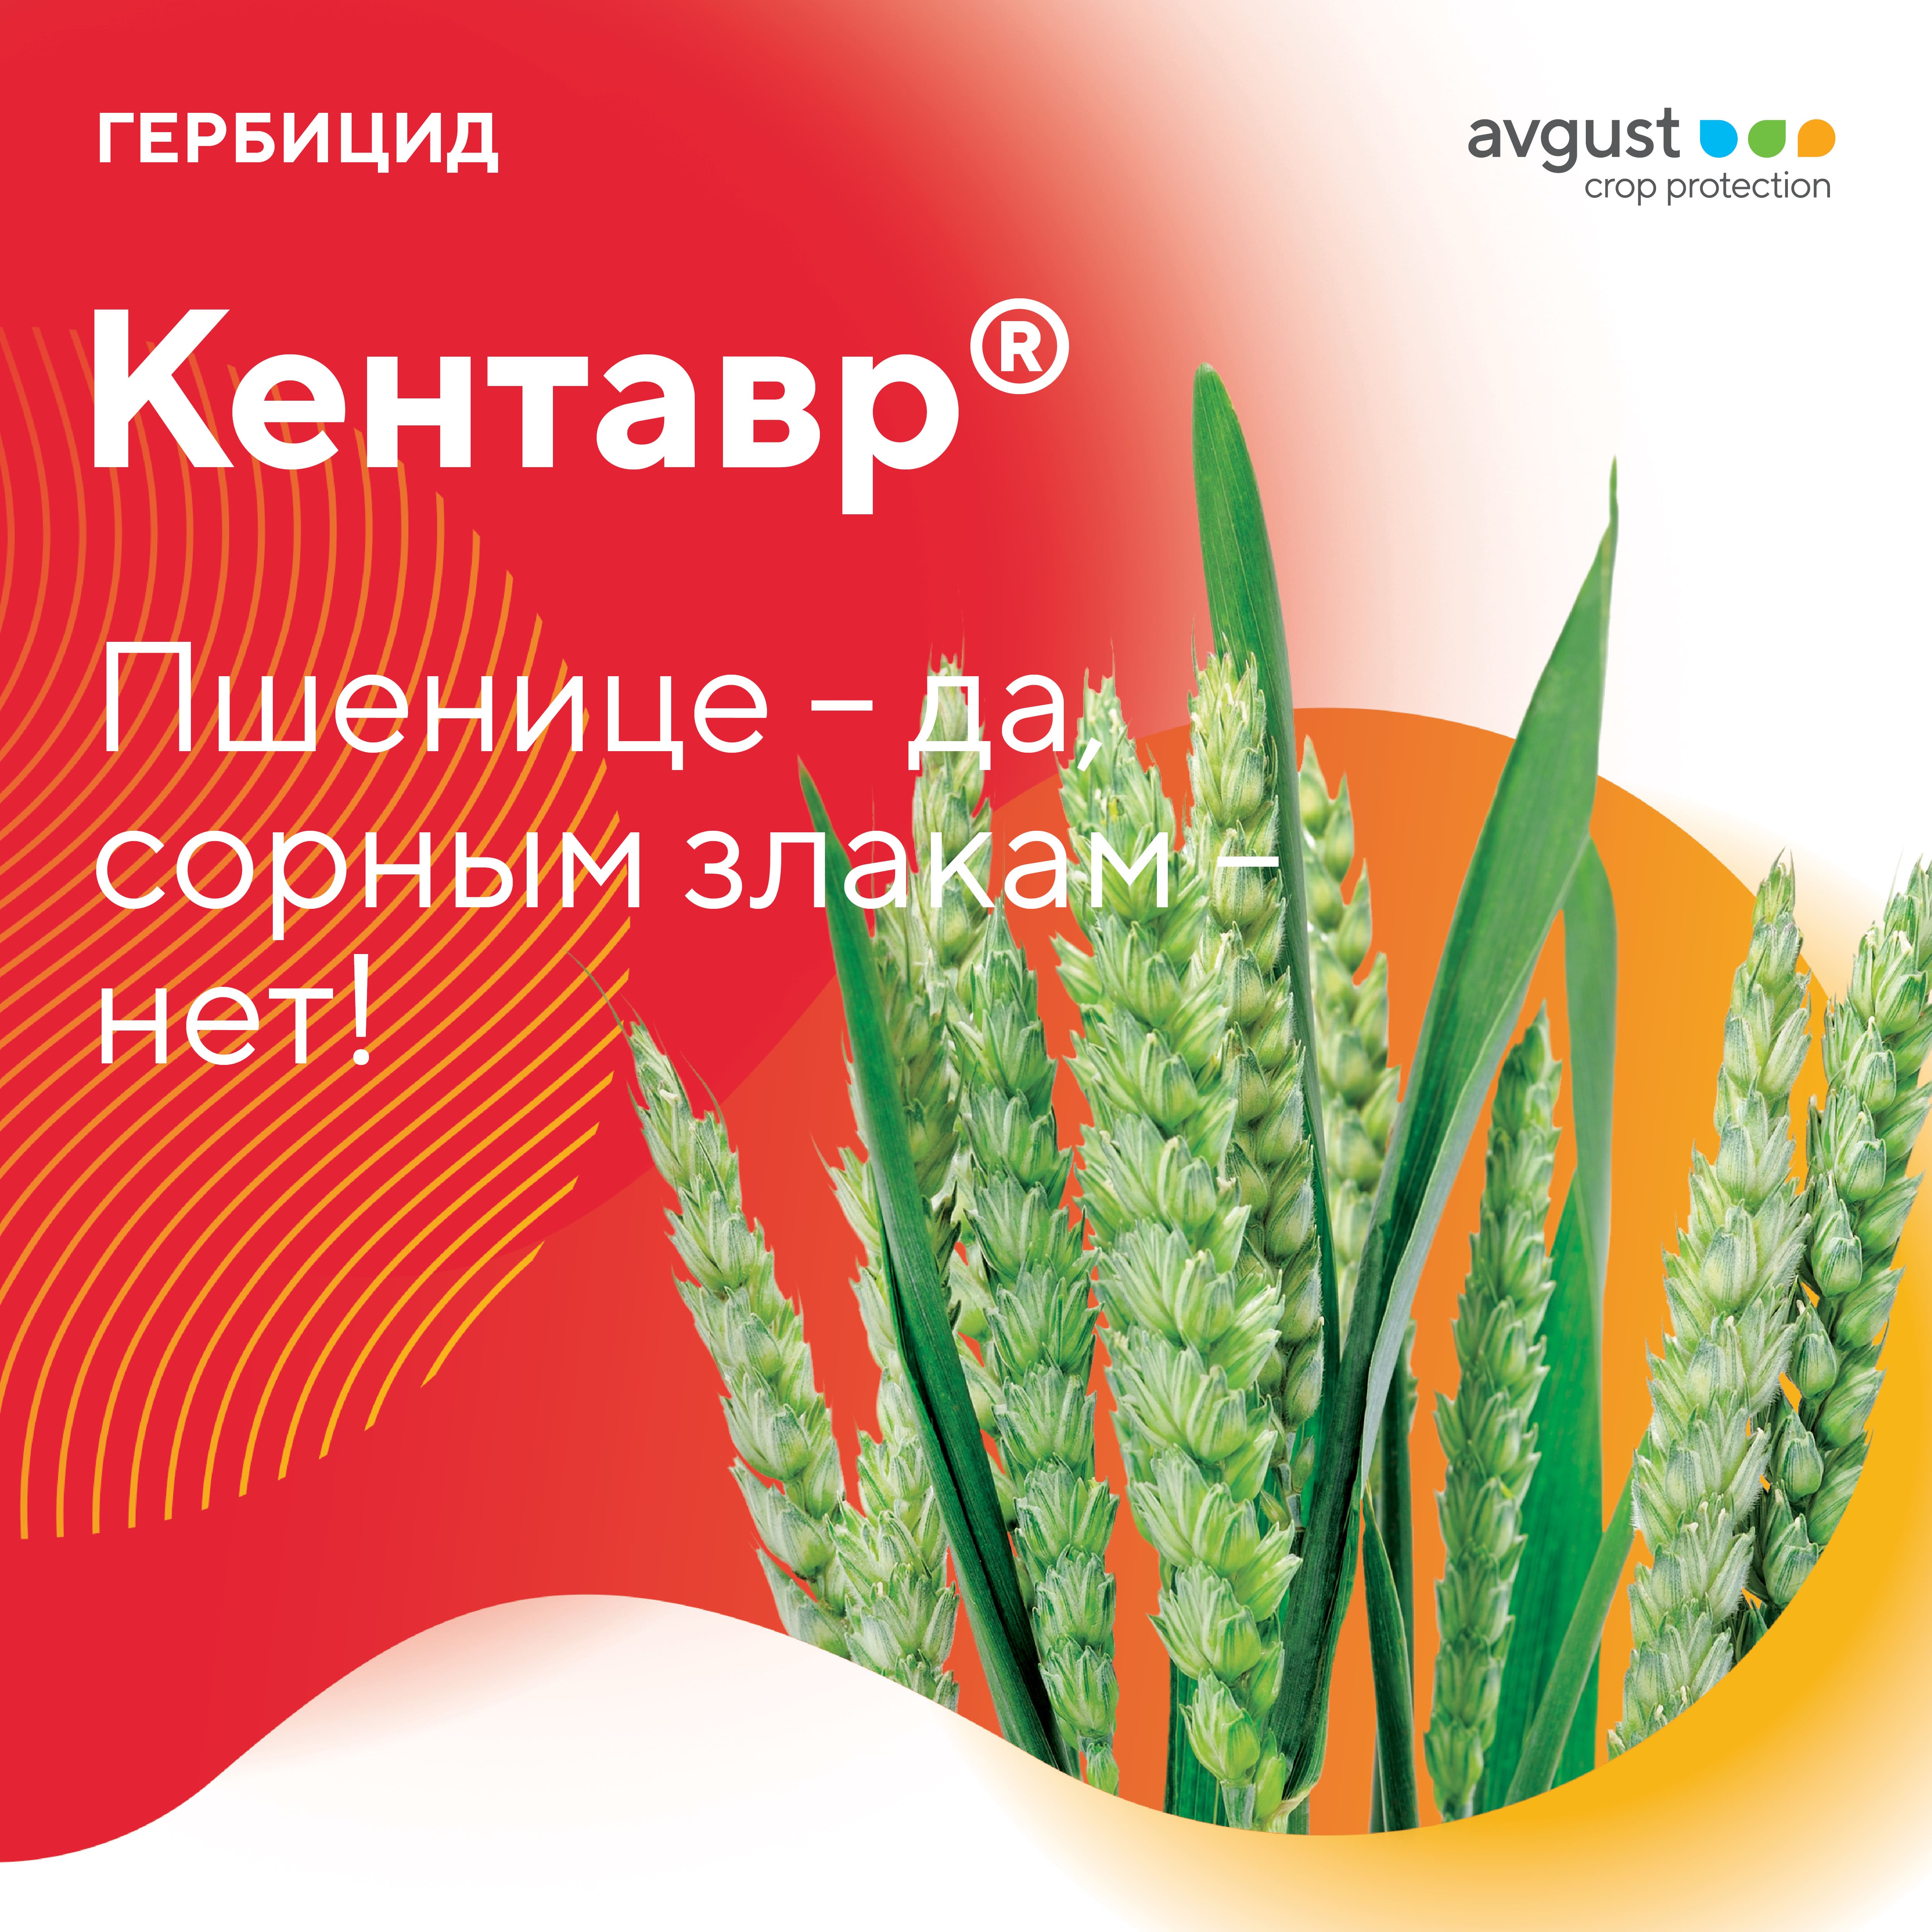 Кентавр® – новый граминицид для защиты посевов яровой и озимой пшеницы